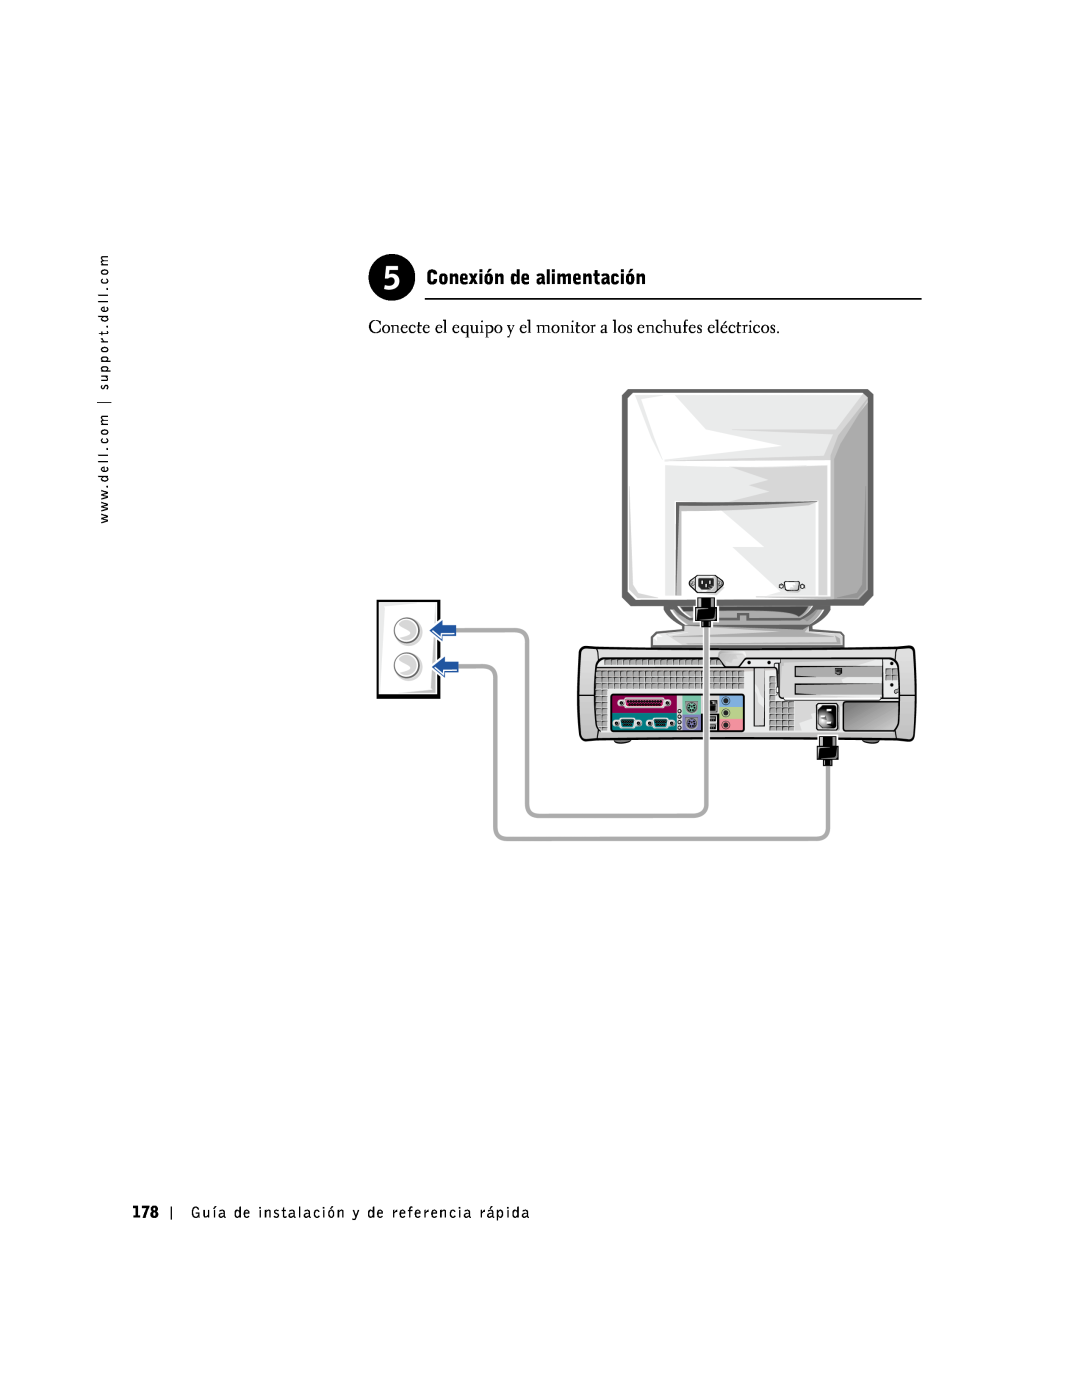 Dell 1G155 manual Conexión de alimentación, Conecte el equipo y el monitor a los enchufes eléctricos 